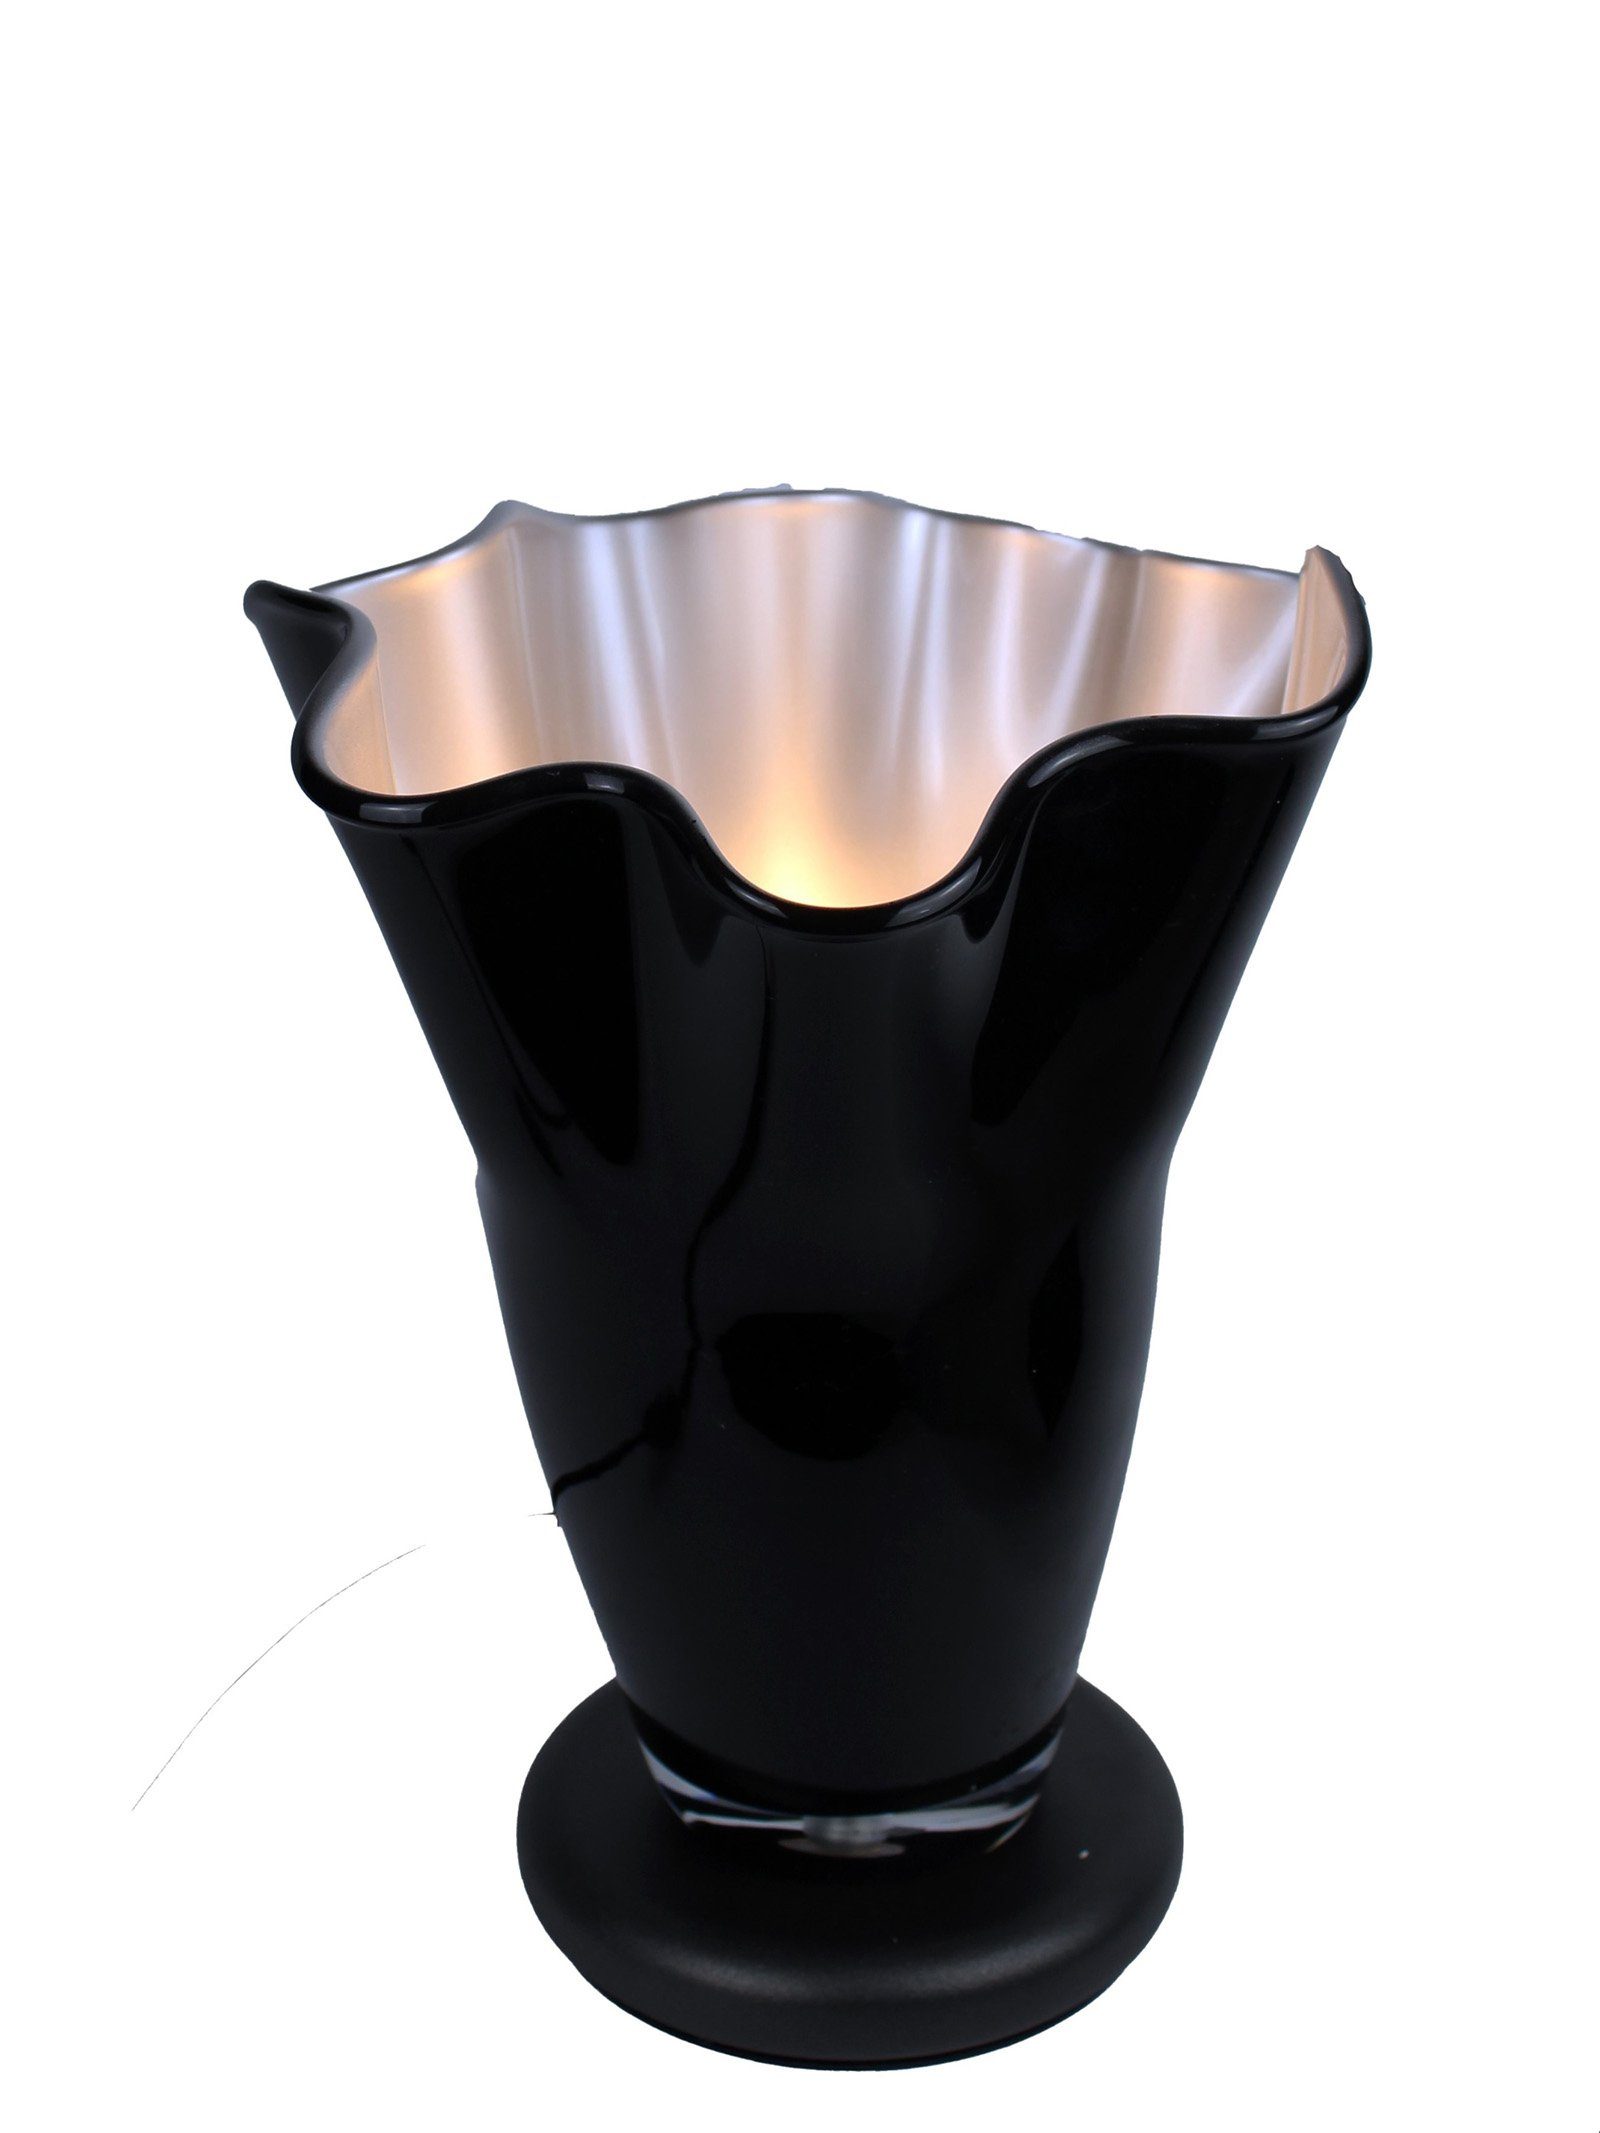 Signature Home Collection Tischleuchte Tischlampe Glas gewellt indirektes Licht mit Sockel Glaslampe, ohne Leuchtmittel, warmweiß, nach oben strahlend ohne zu Blenden schwarz-silber